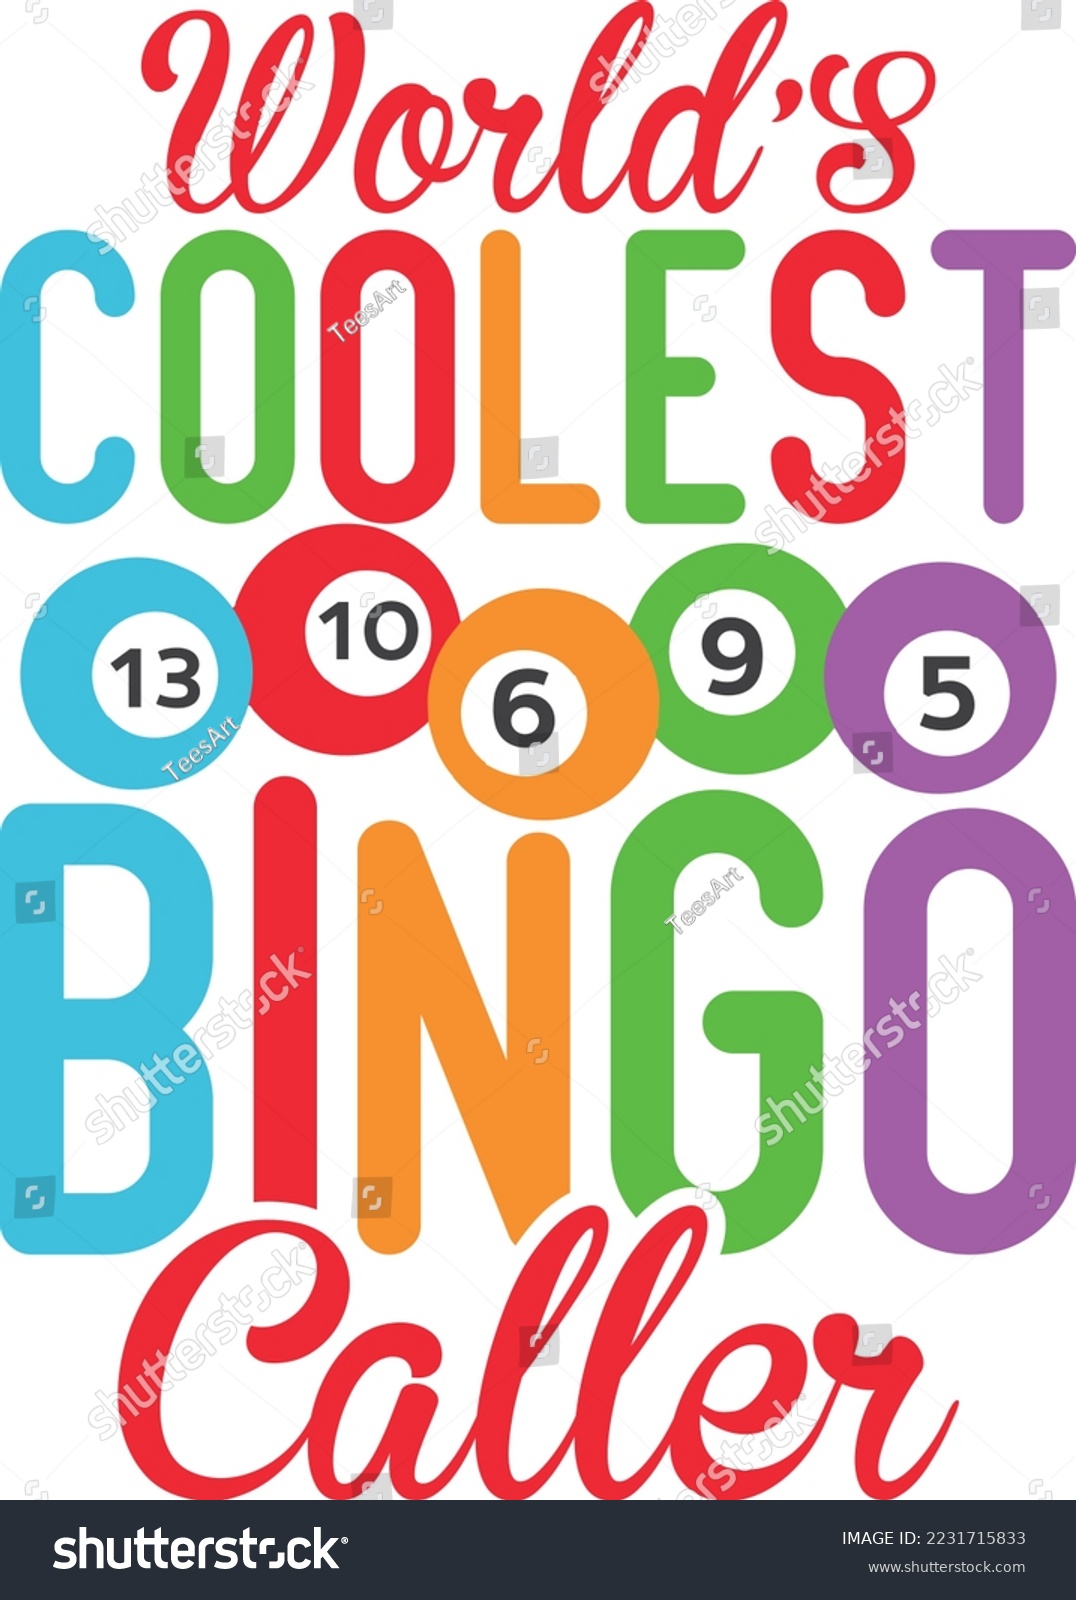 SVG of Coolest Bingo caller svg bingo svg design svg